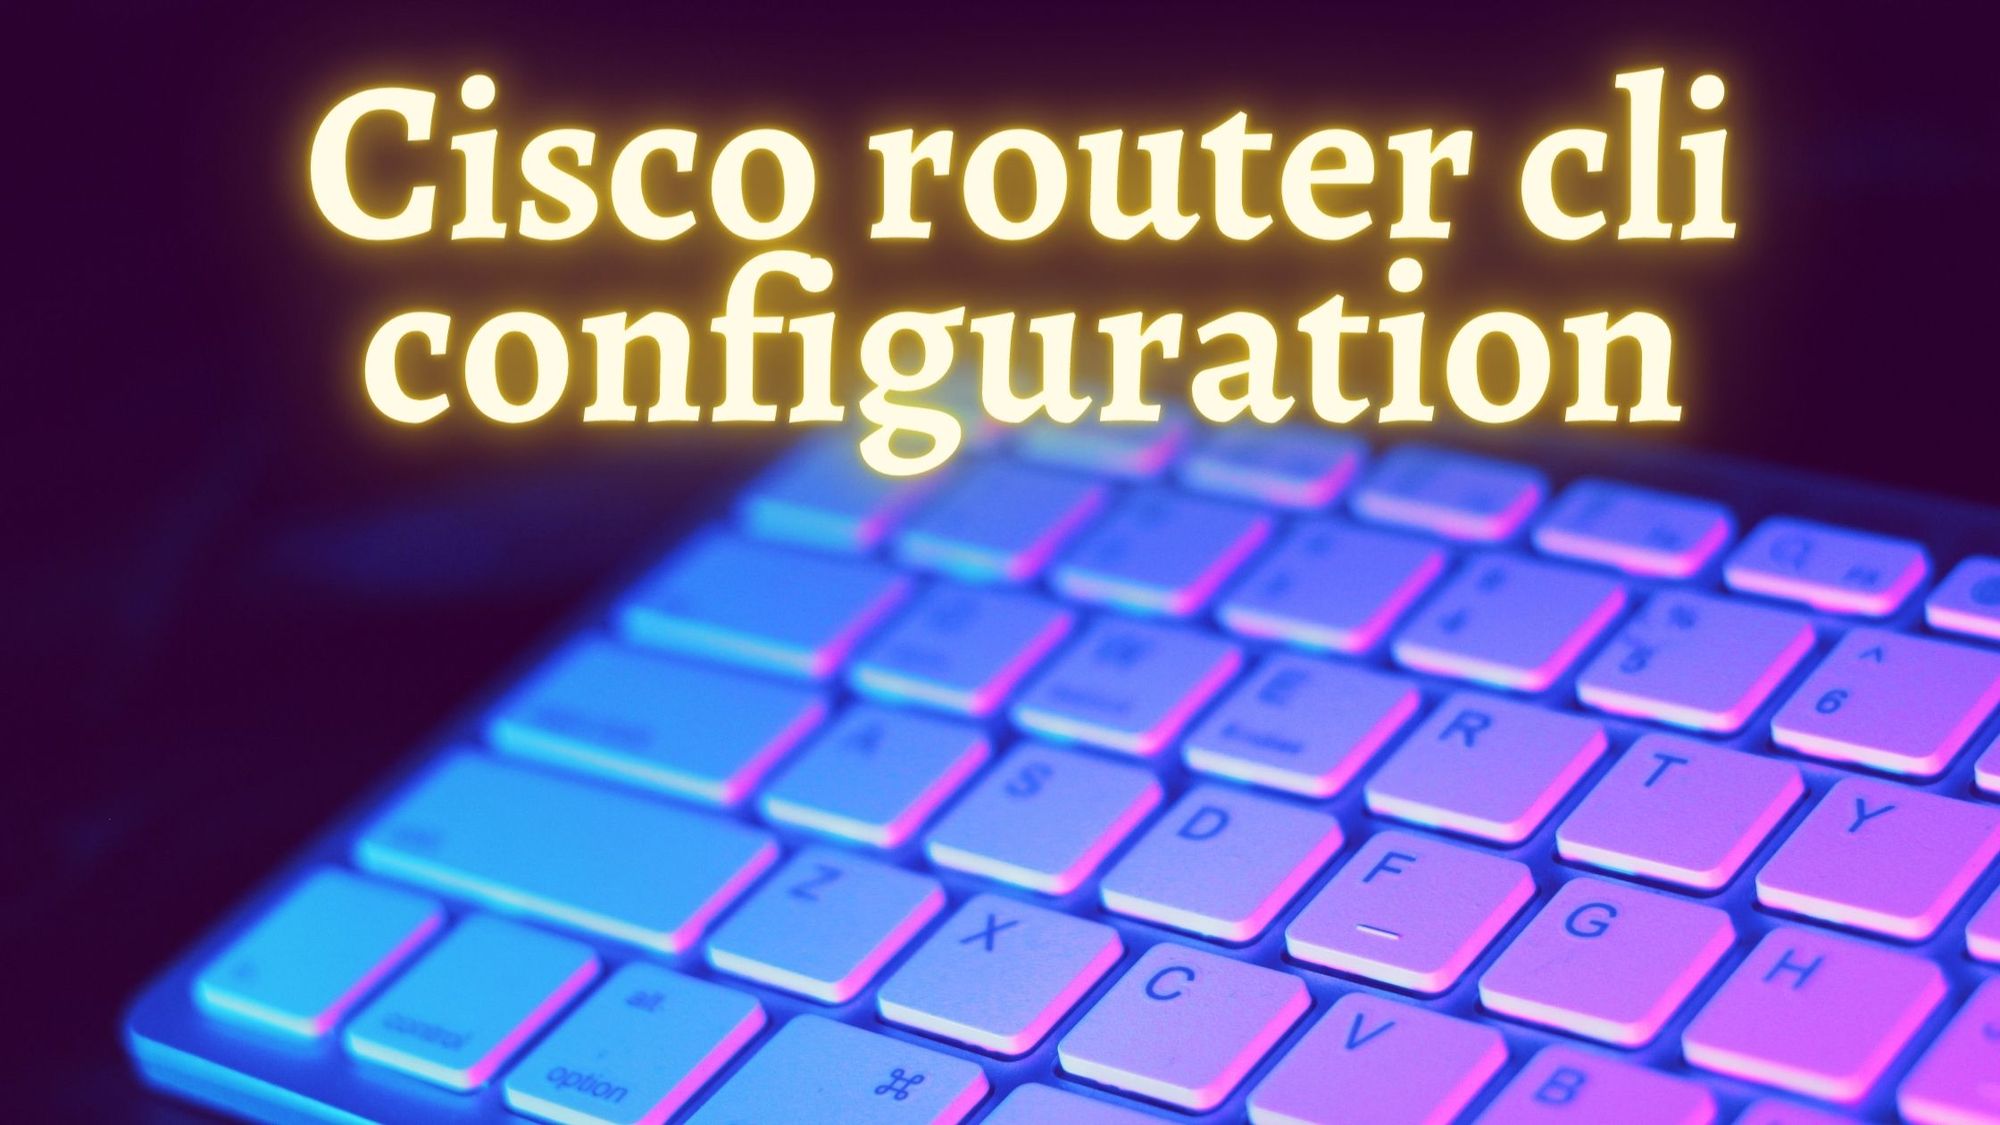 Cisco router cli configuration